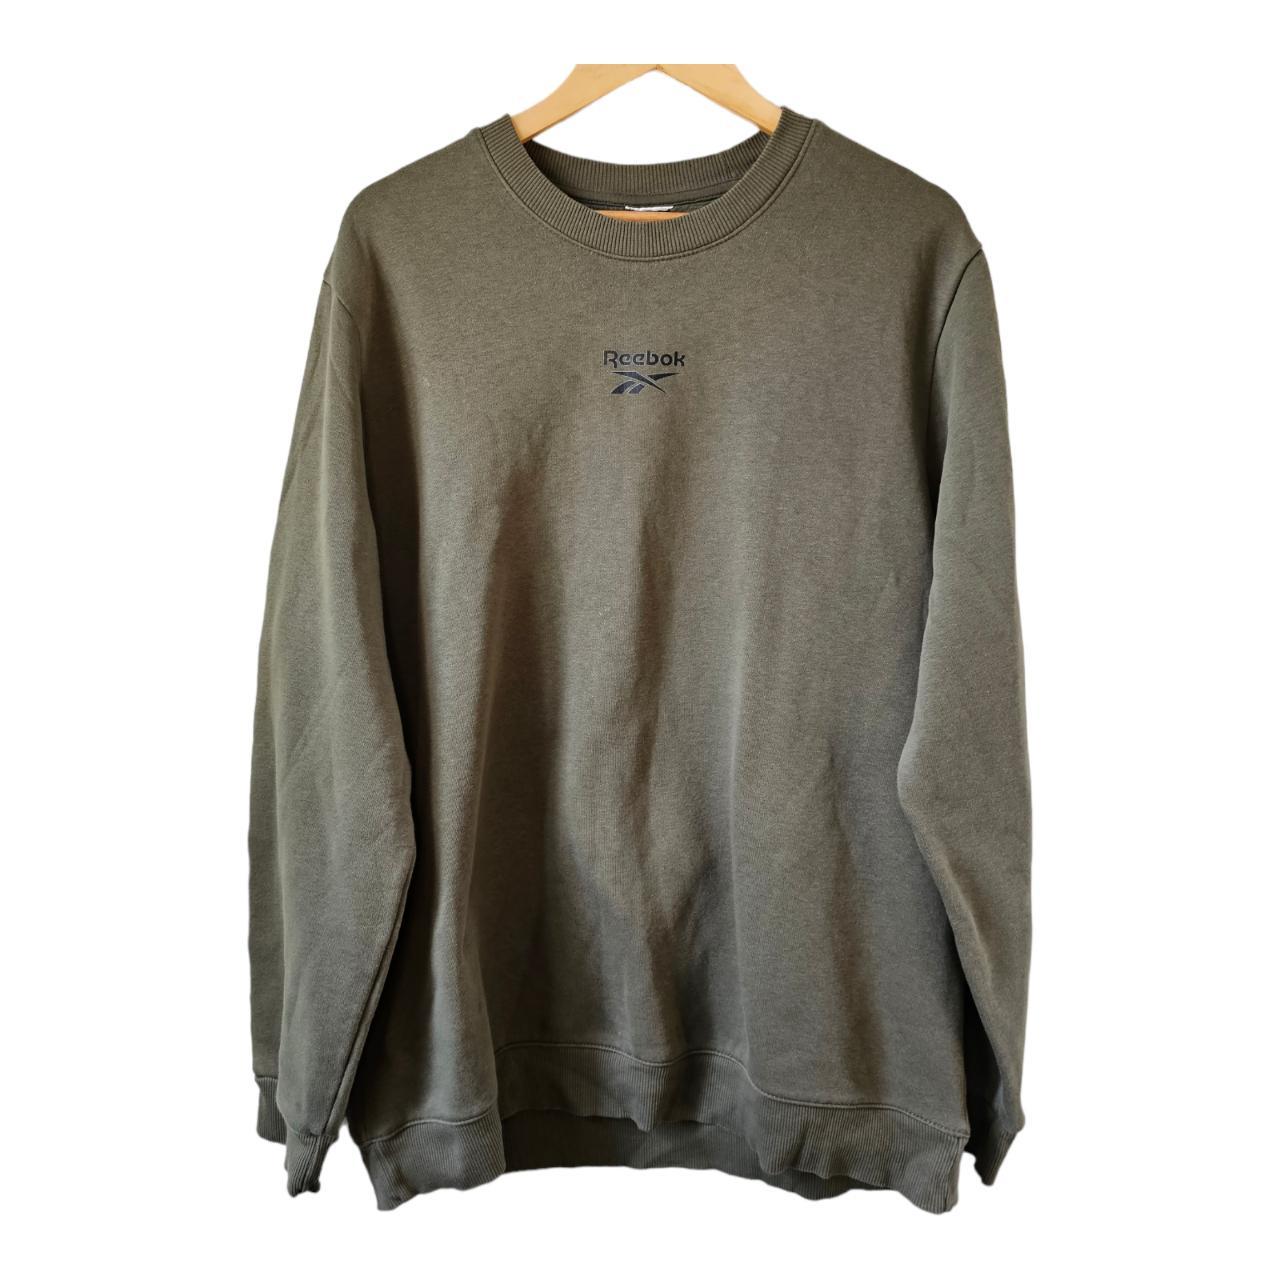 90s Vintage Y2K Style Green Reebok Sweatshirt Jumper... - Depop